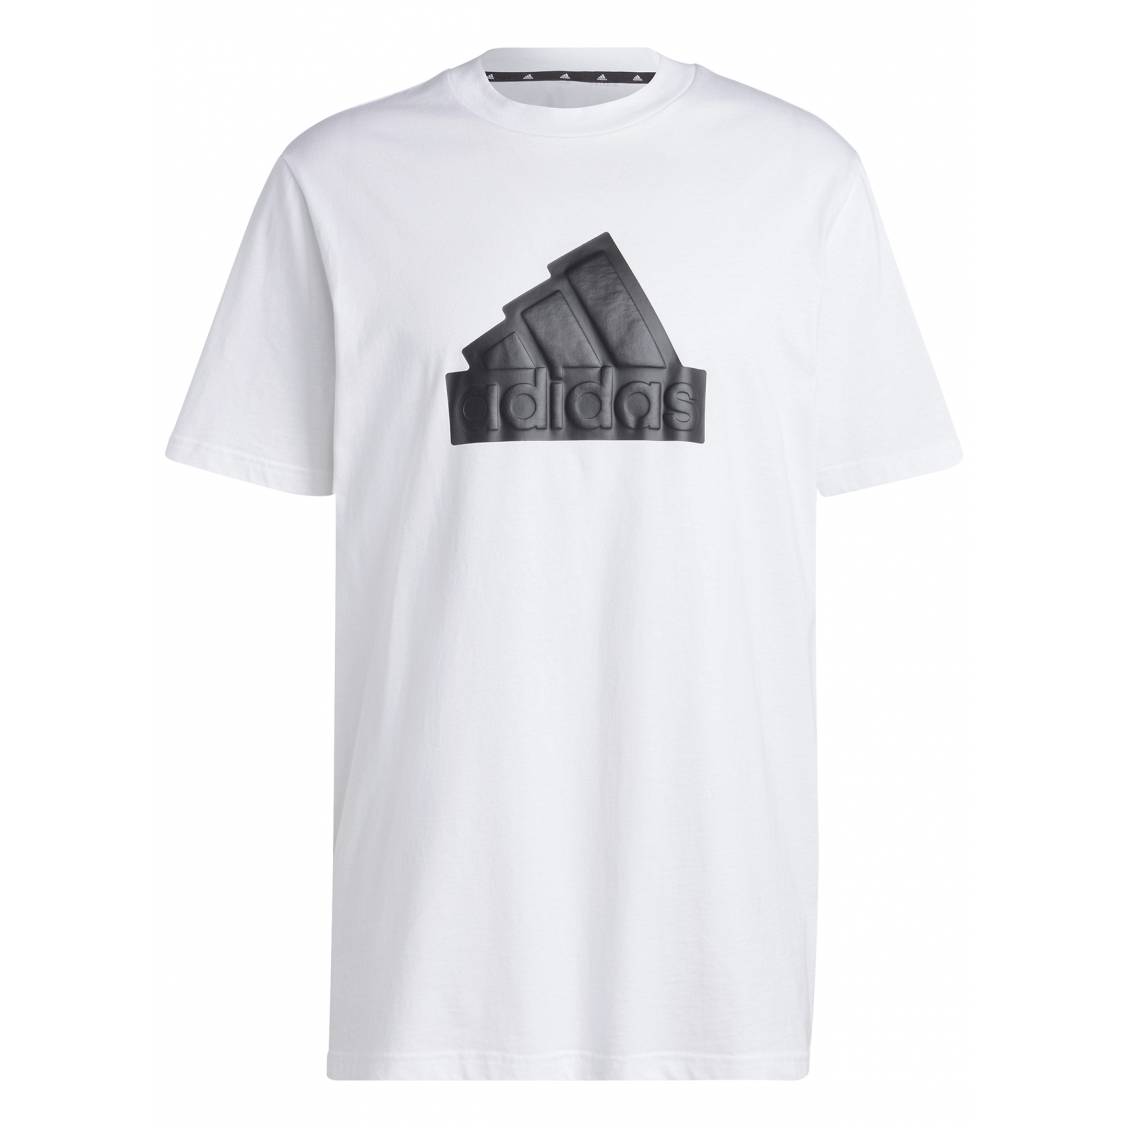 T-shirt adidas en coton blanc uni présentant une coupe droite et un large  logo noir débossé | Rue Des Hommes